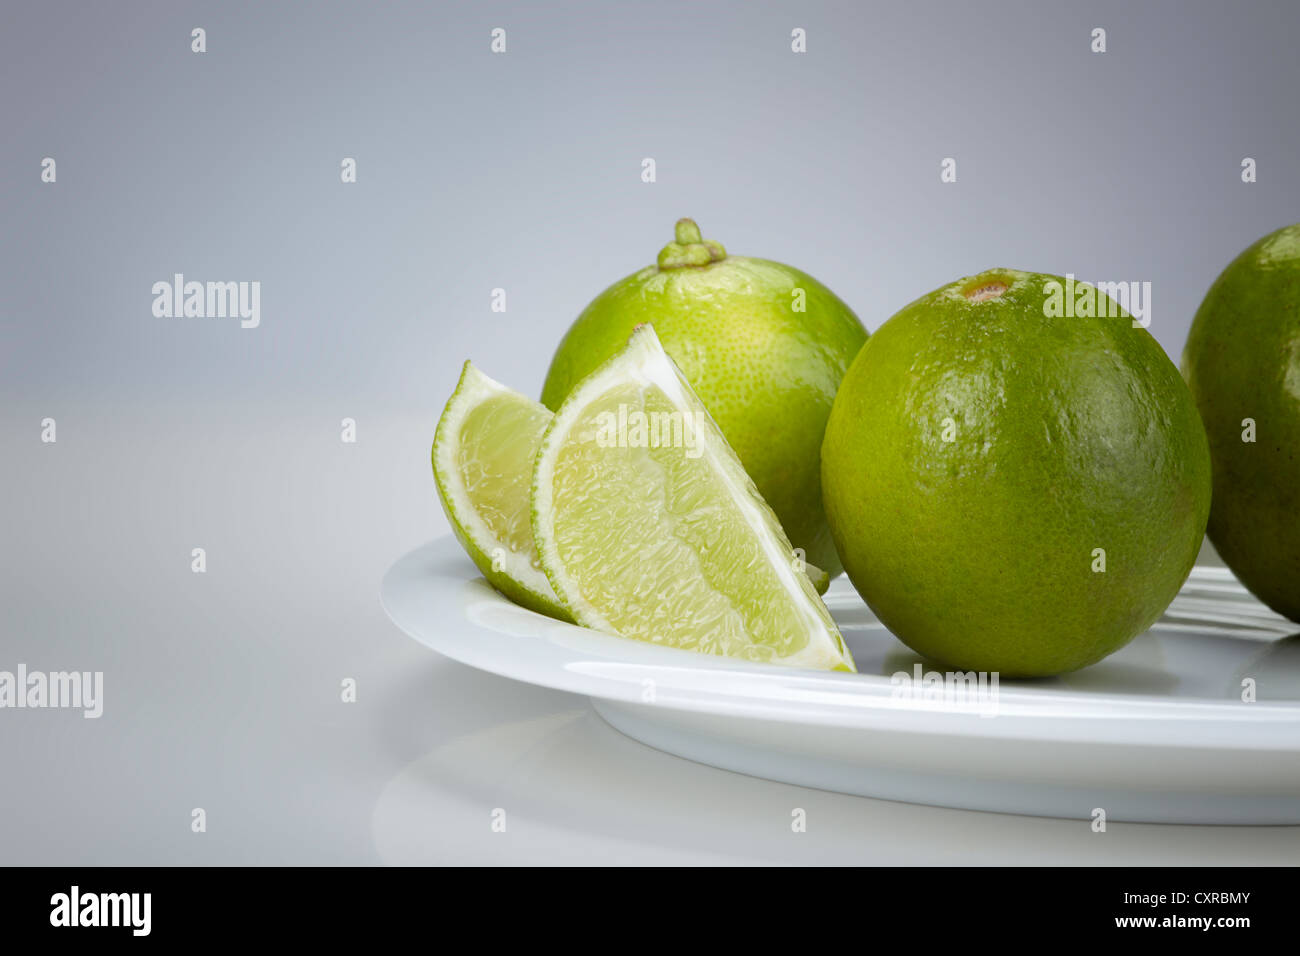 Limón (Citrus latifolia) sobre una placa blanca. Foto de stock